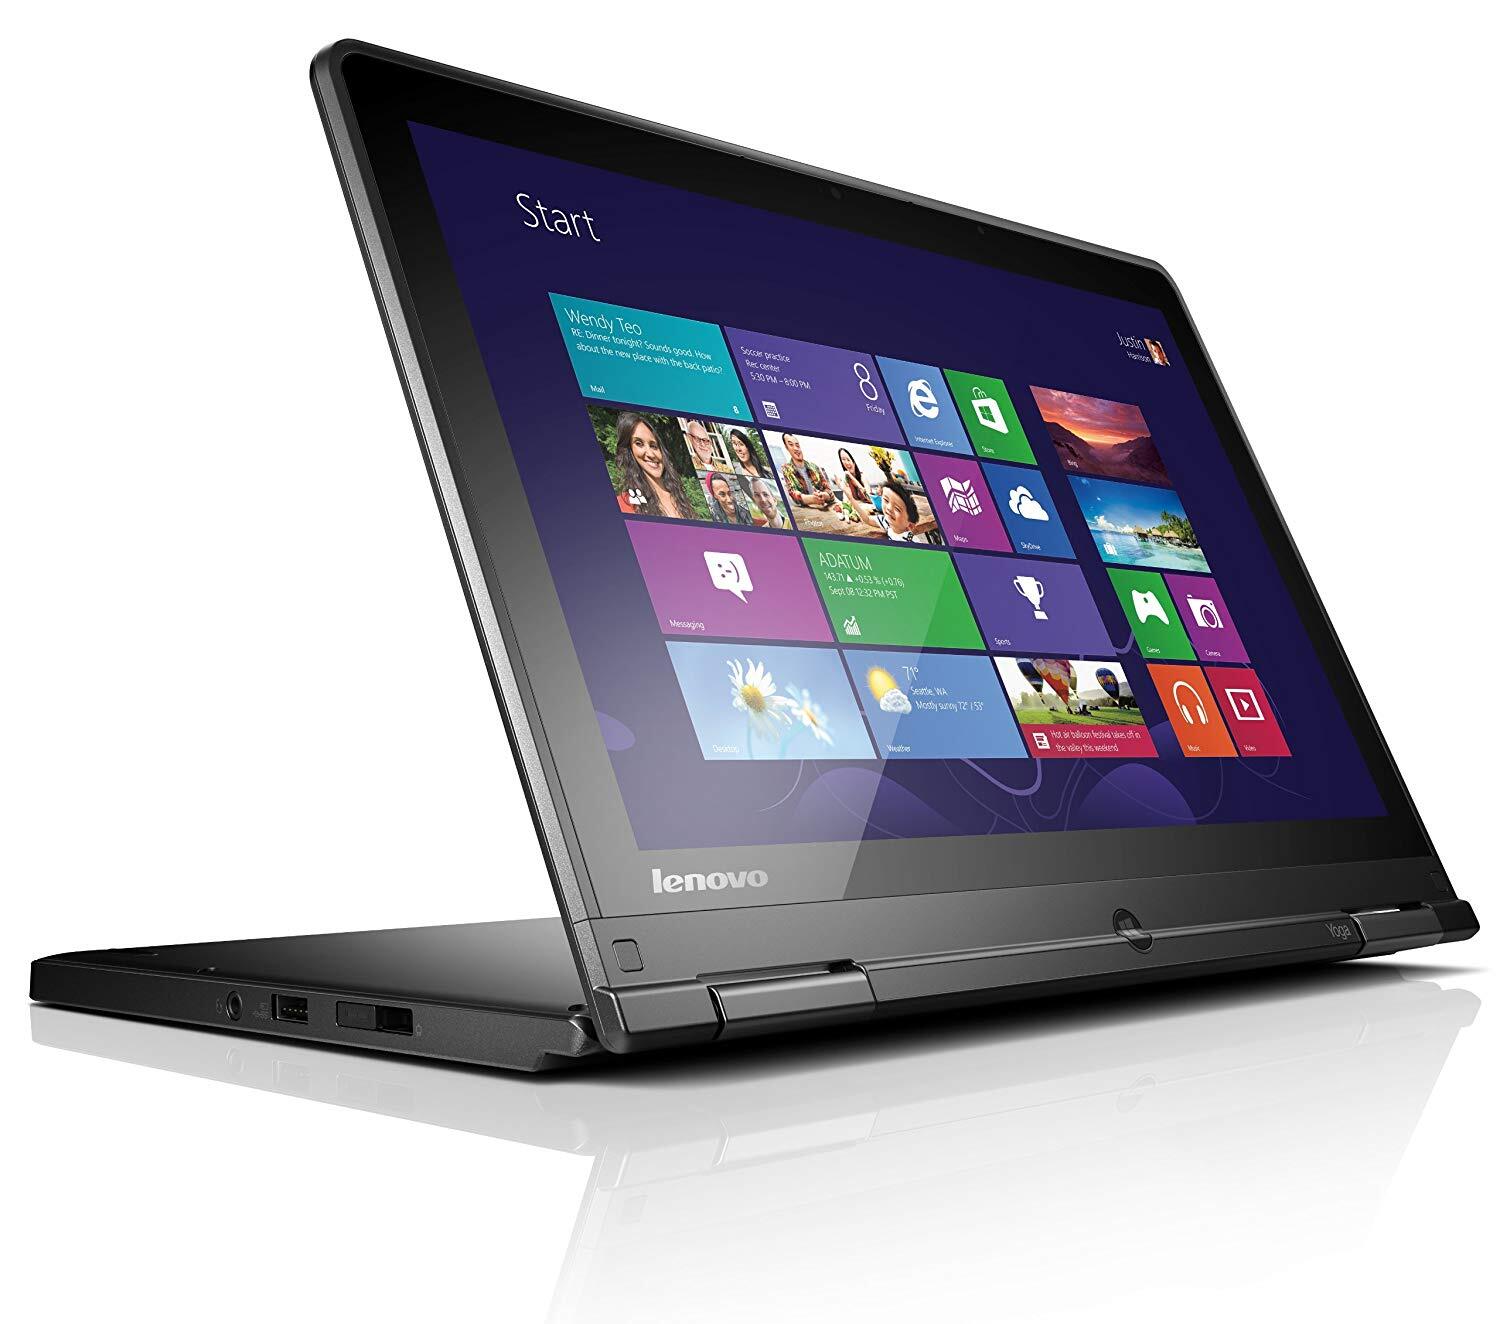 Thiết kế bên ngoài của Lenovo ThinkPad Yoga 12 mang lại cảm giác chắc chắn với vỏ làm từ nguyên liệu hợp kim